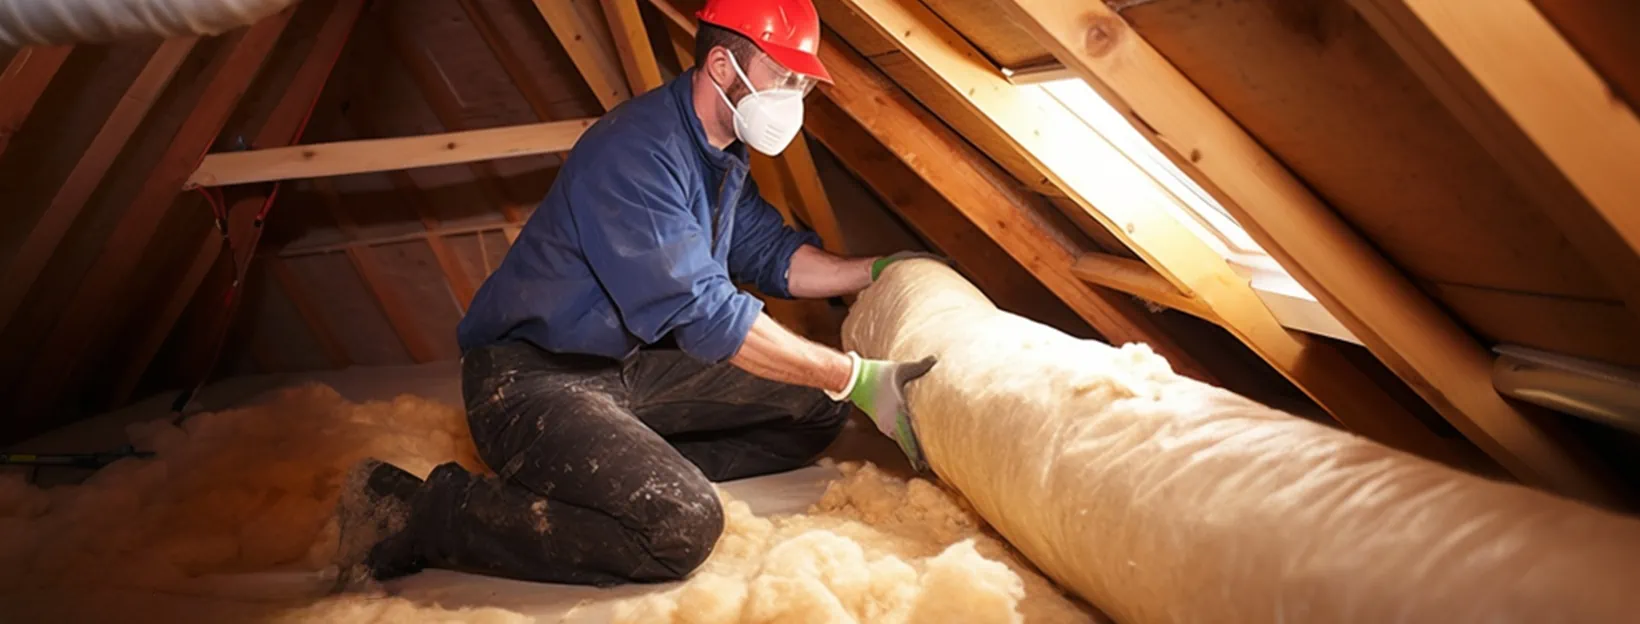 loft insulation grant Durham area